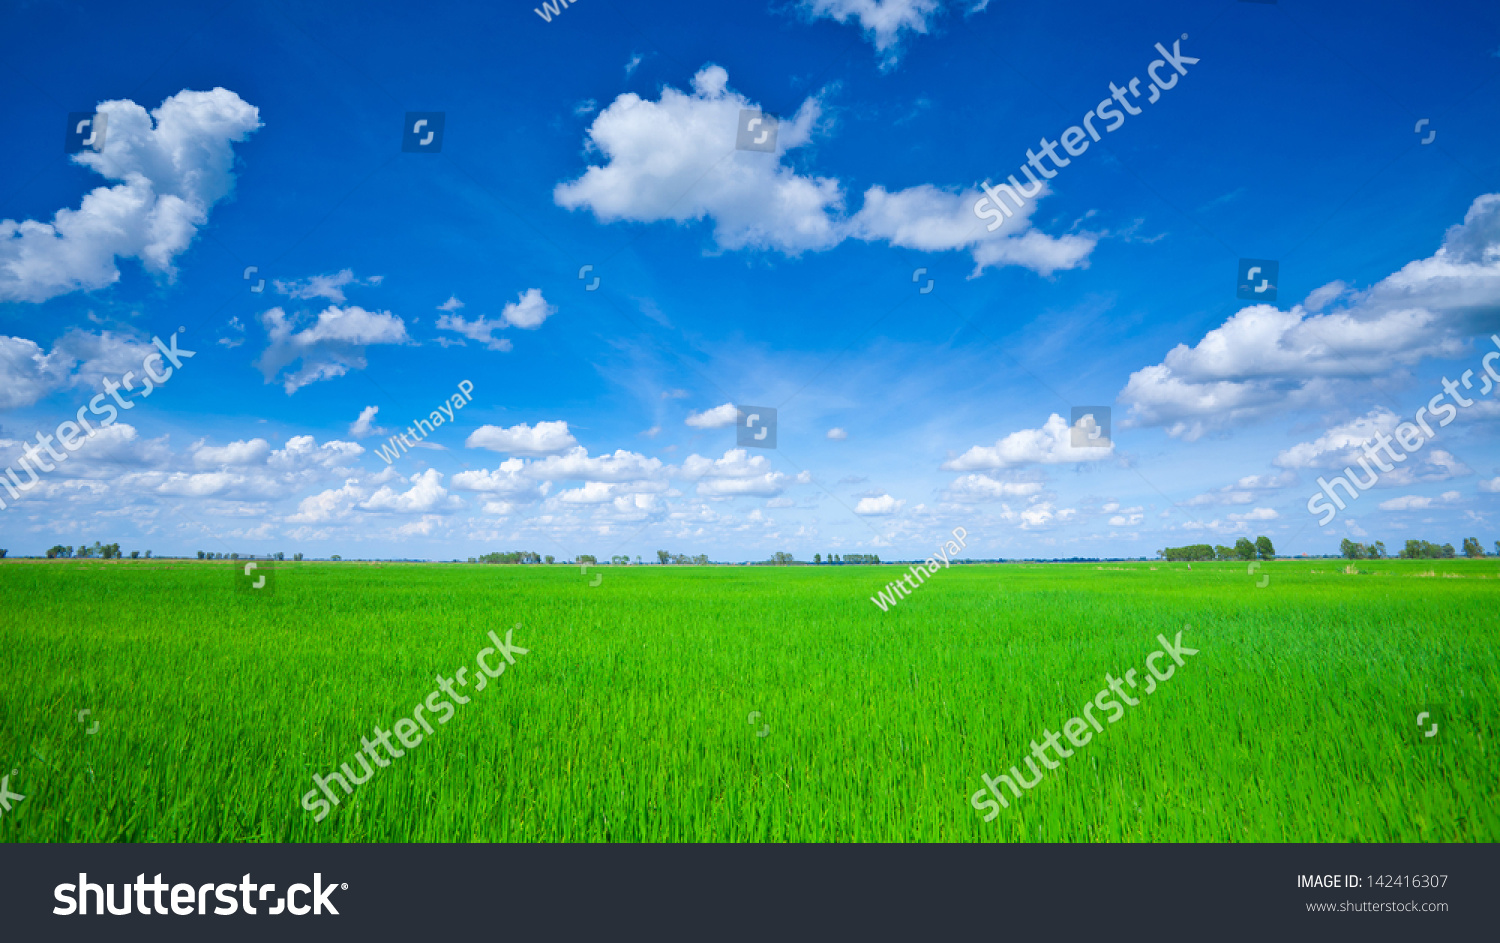 Rice field green grass blue sky cloud cloudy landscape #142416307